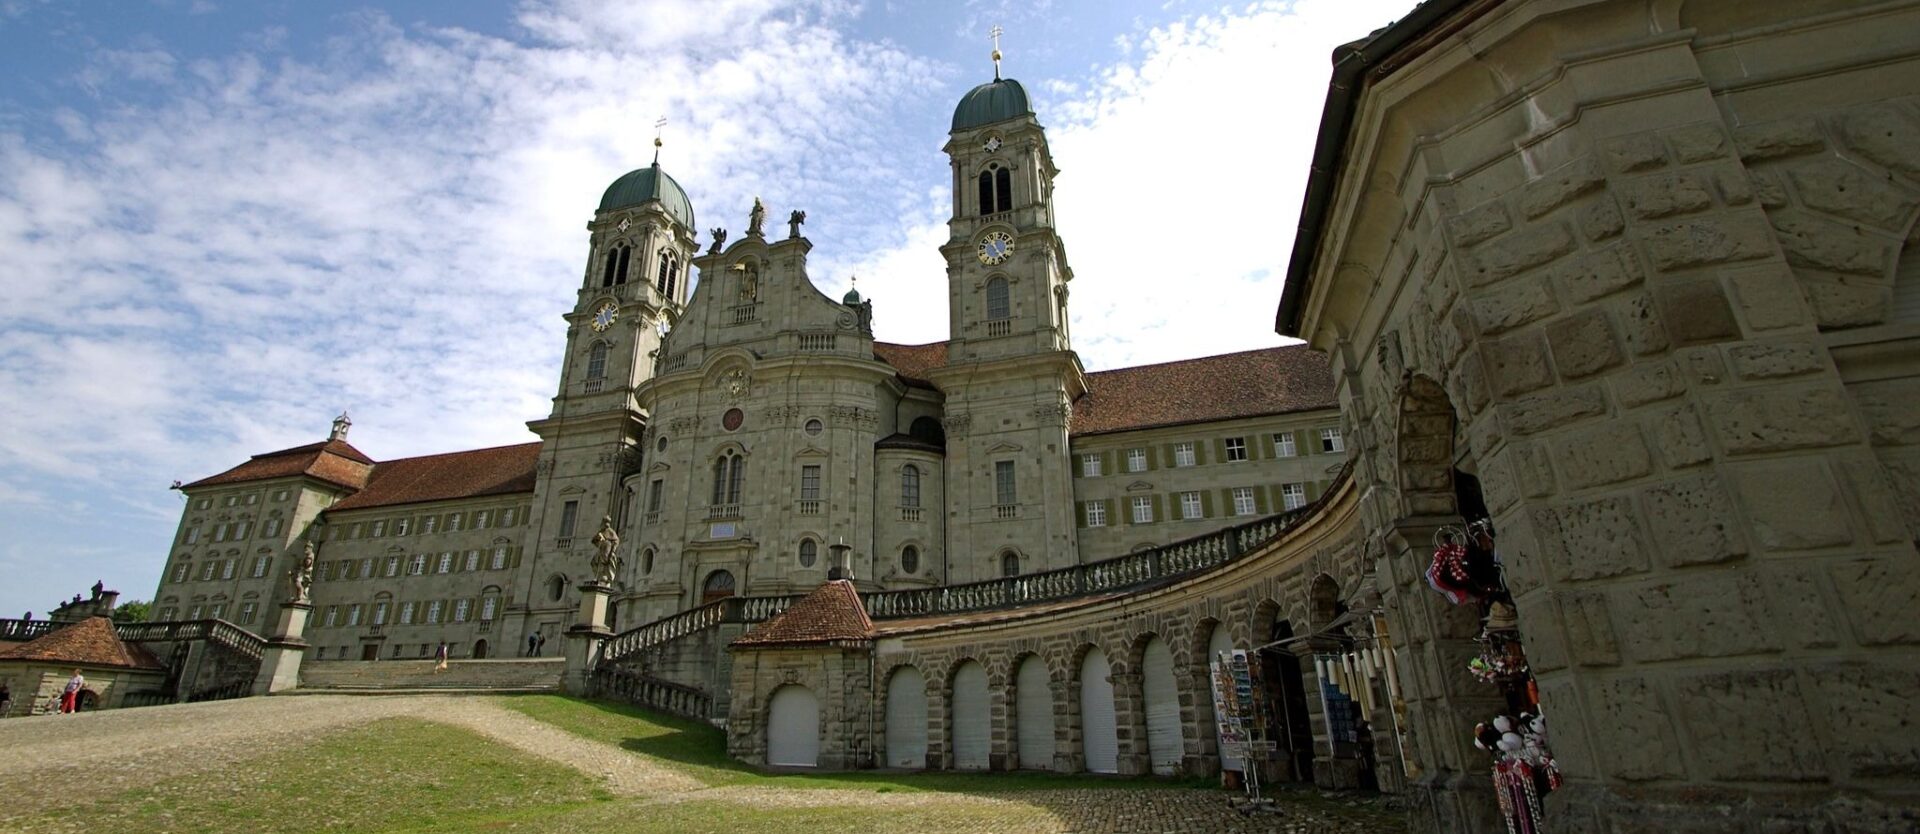 Les évêques suisses se sont rencontrés entre le 5 et le 7 juin 2023 à l'abbaye d'Einsiedeln (SZ) | © Stephanie Croos/Flickr/CC BY-SA 2.0